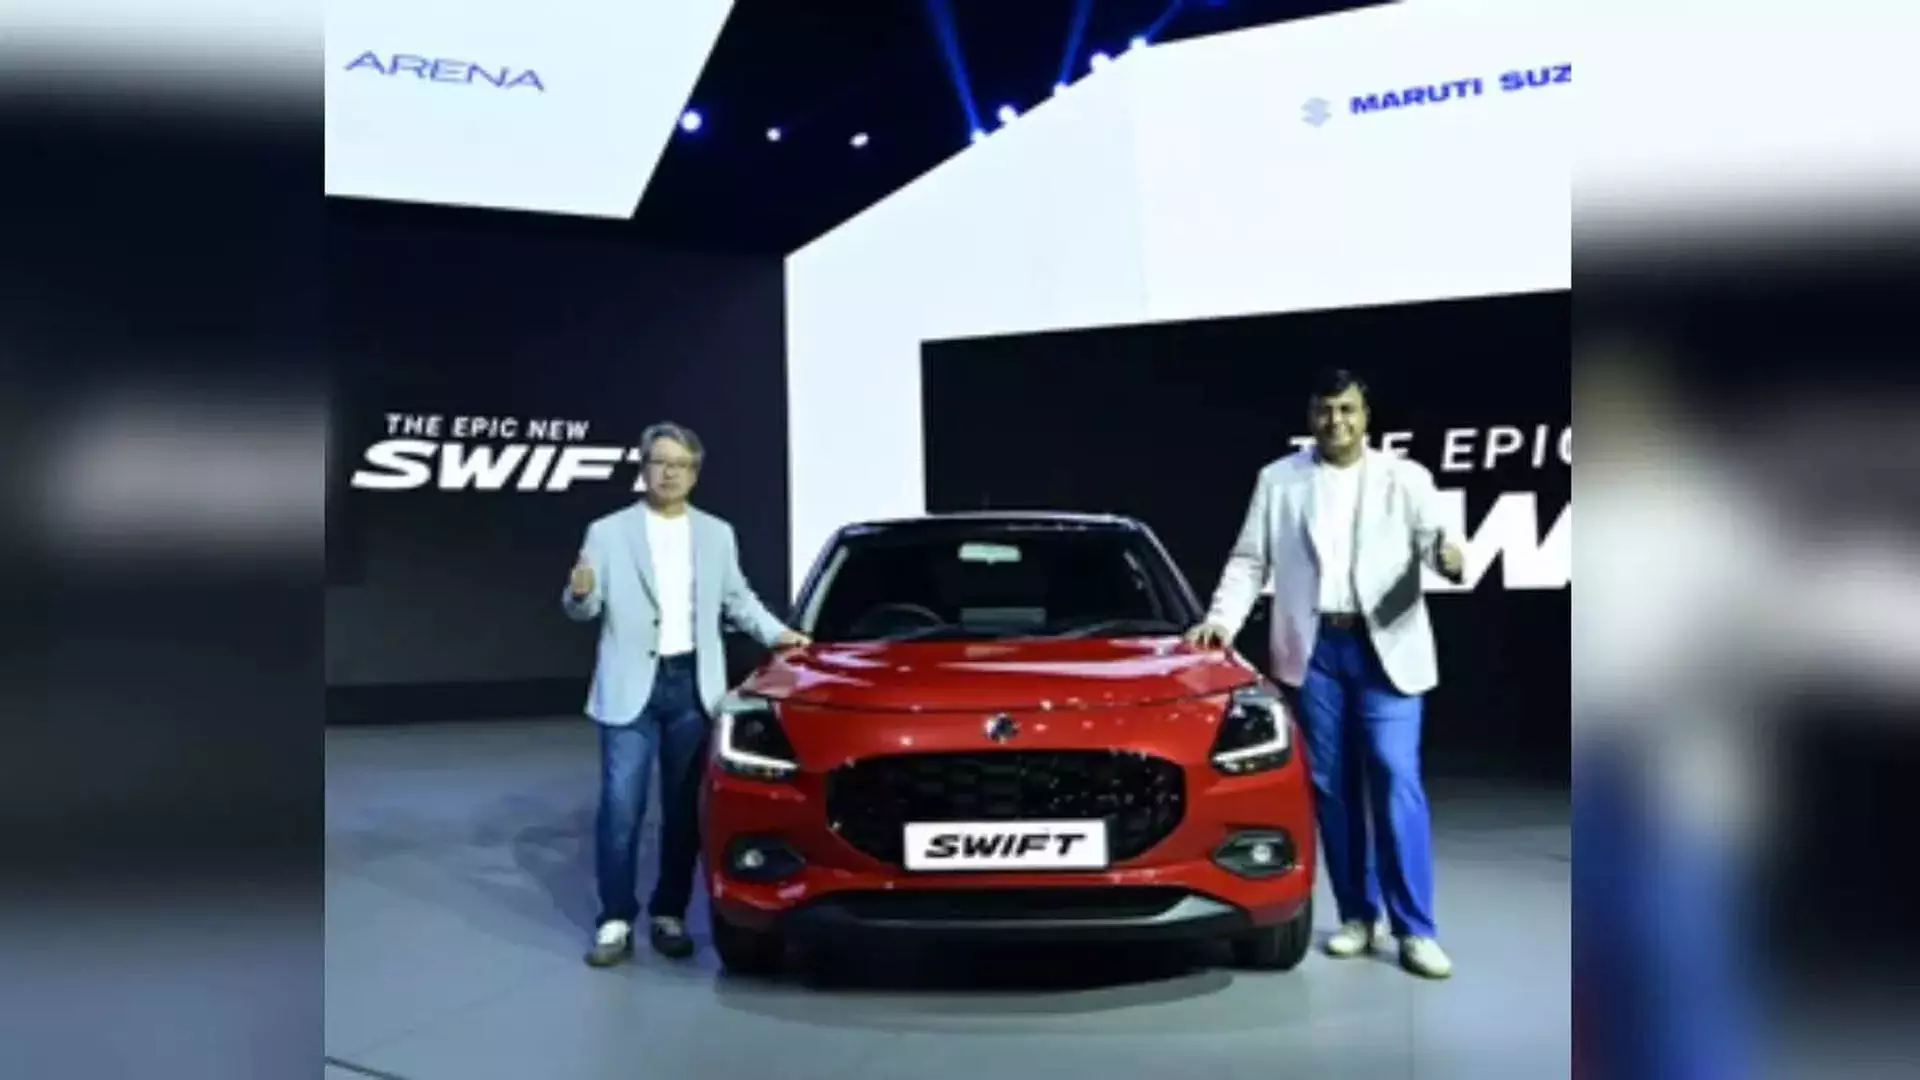 Maruti Suzuki स्विफ्ट ने भारत में 3 मिलियन बिक्री का आंकड़ा पार किया